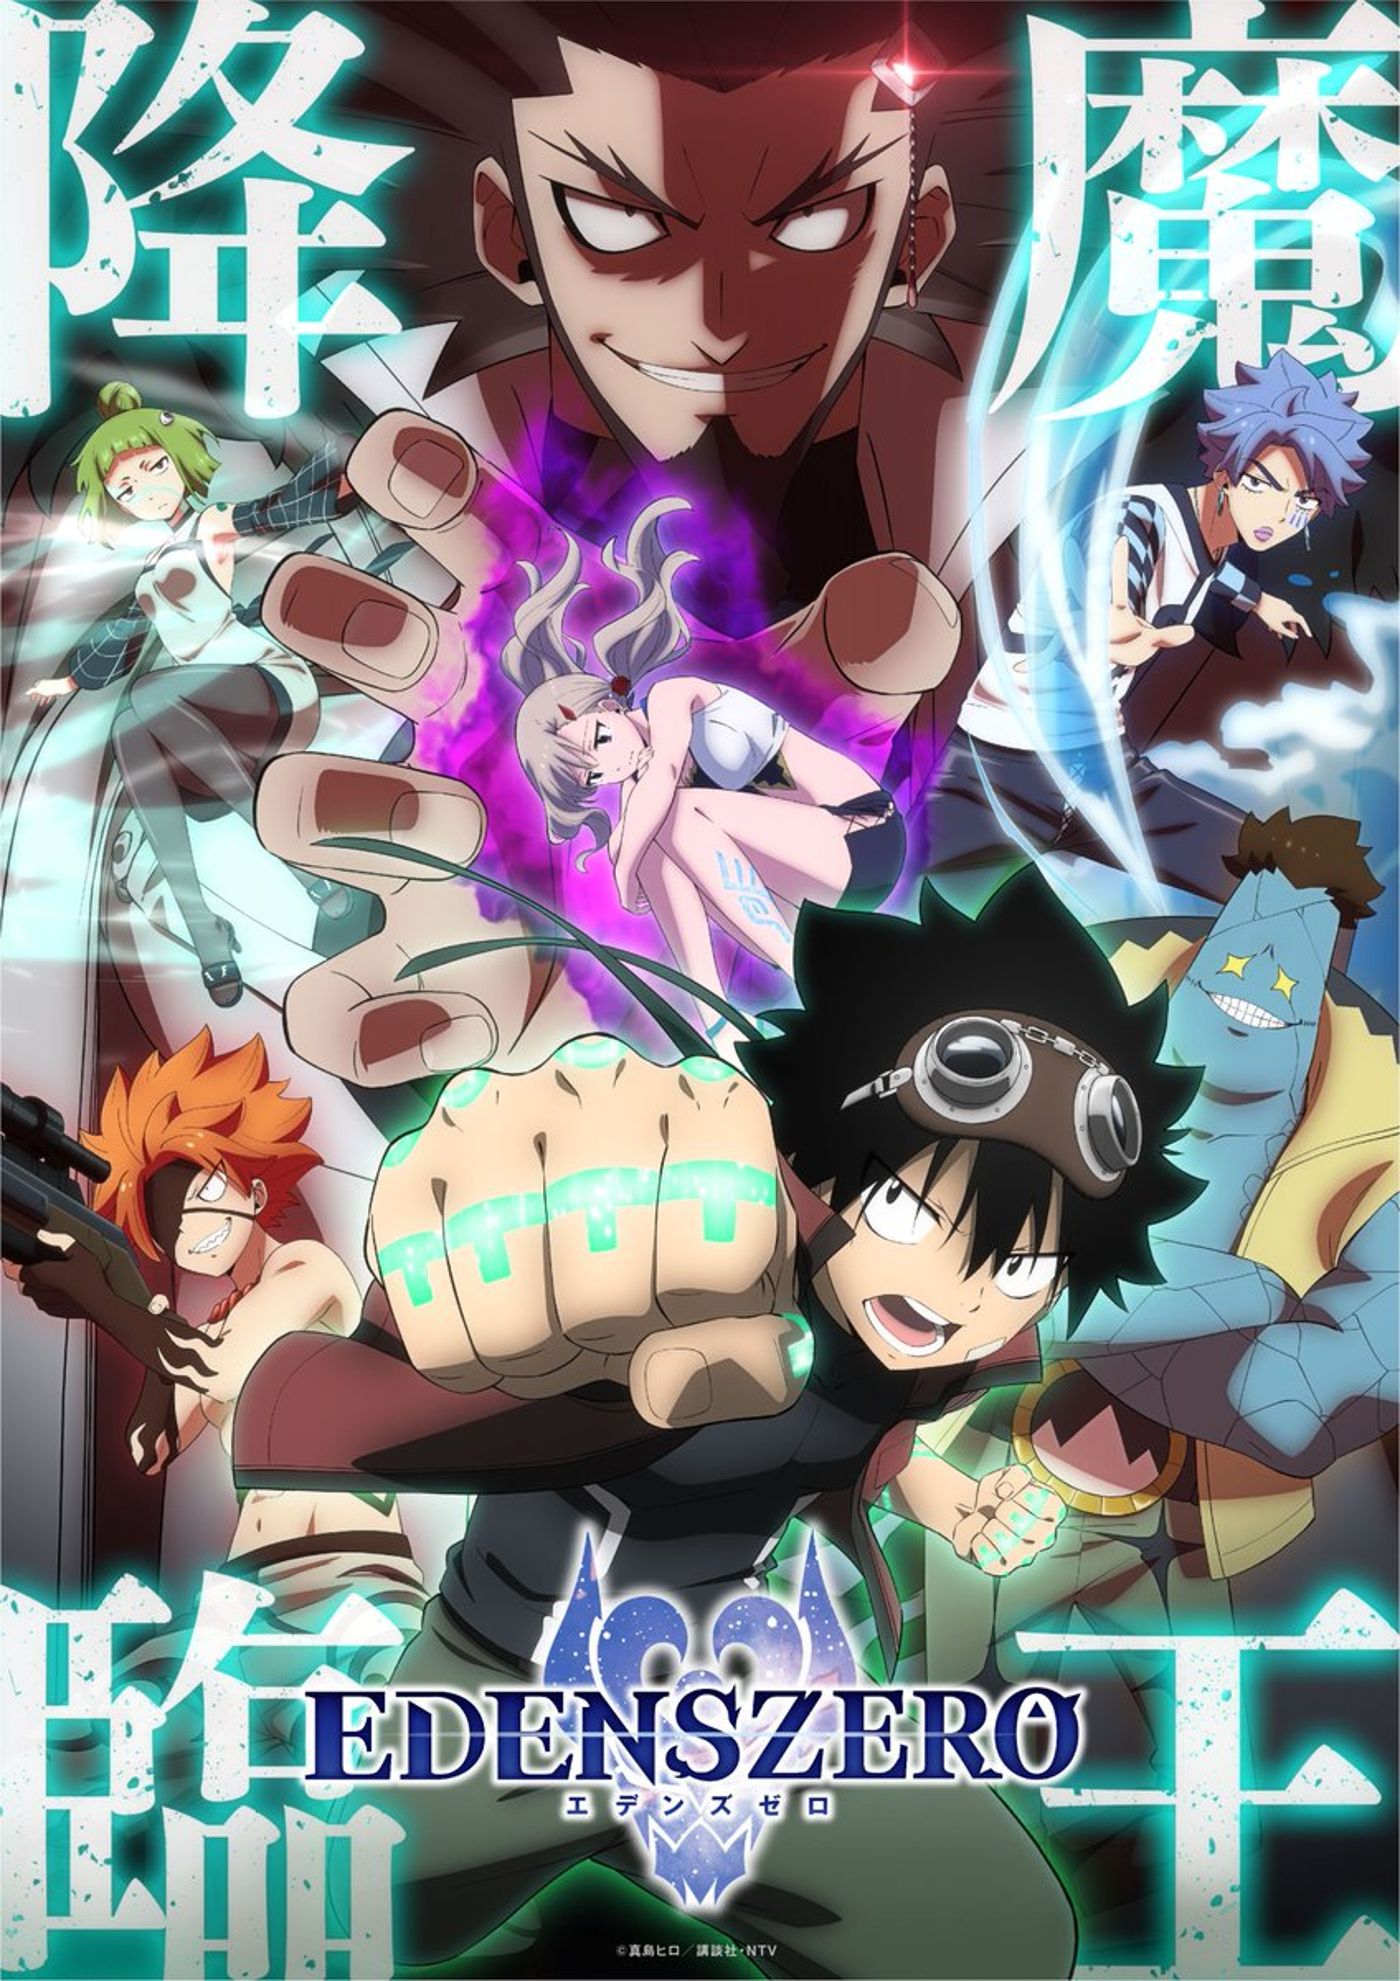 Edens Zero anime season 2 poster real